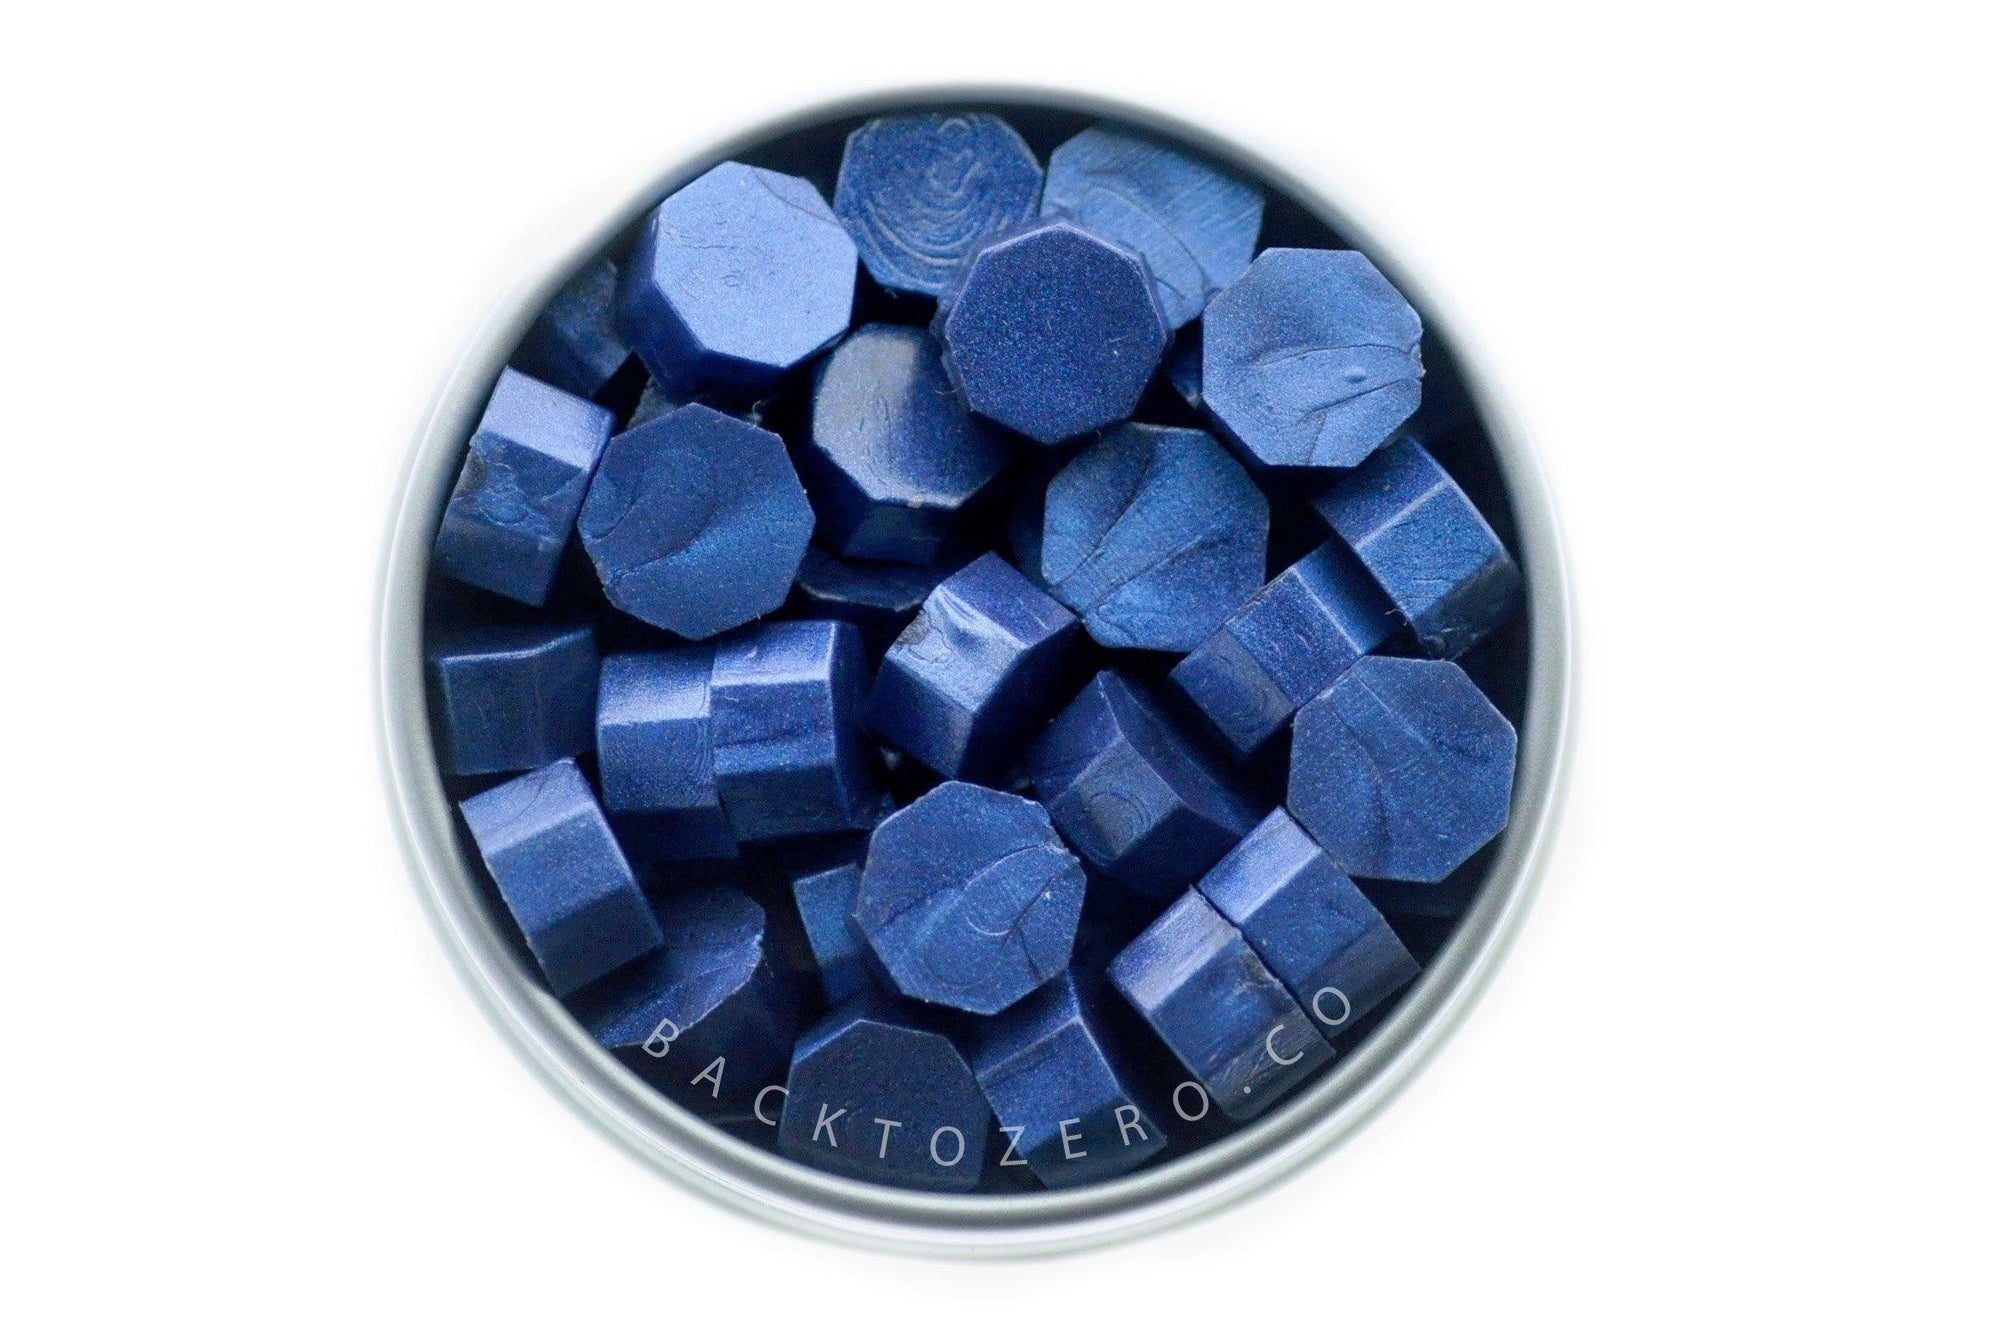 Midnight Blue Octagon Sealing Wax Beads - Backtozero B20 - blue, Metallic, octagon bead, sealing wax, tin, Wax Beads